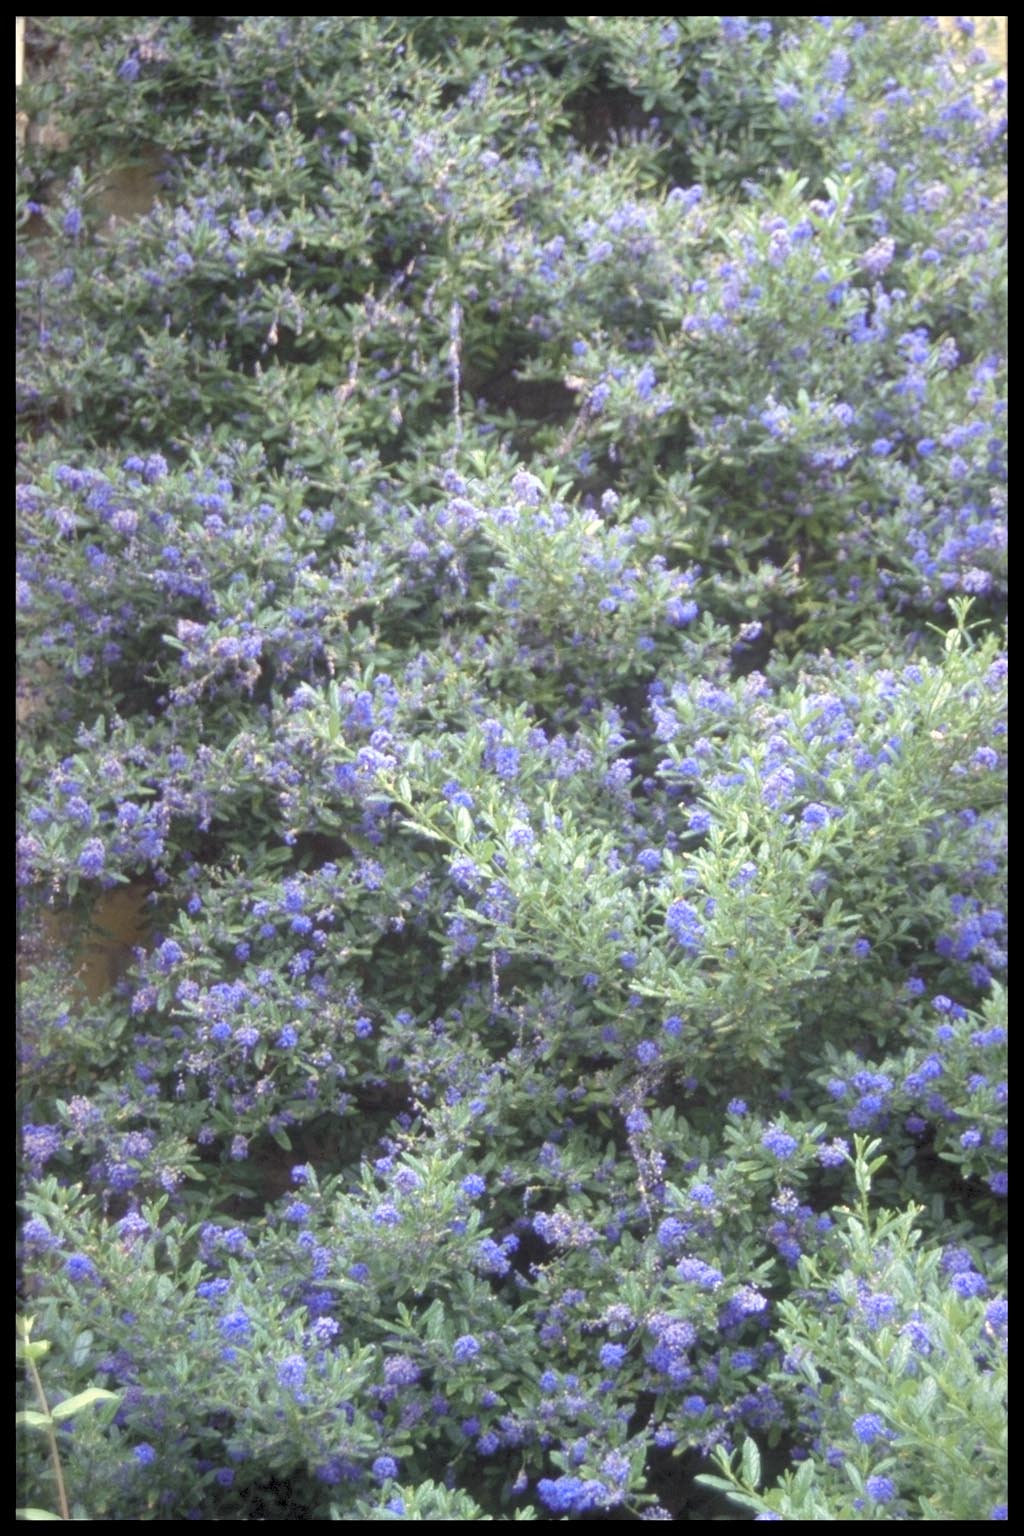 Ceanothus arboreus ‘Trewithen Blue’